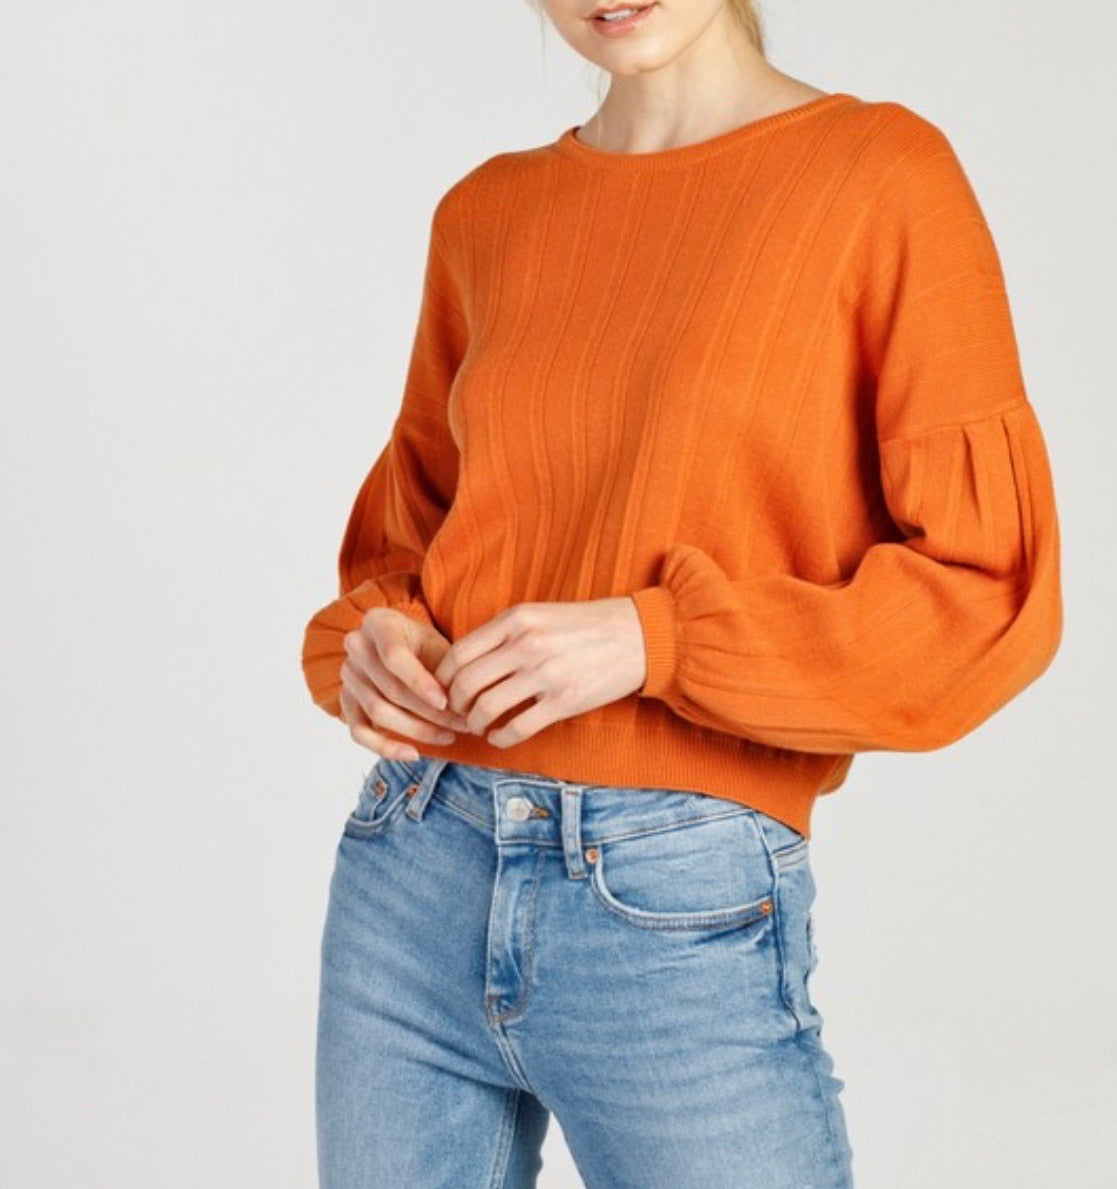 The Pumpkin Sweater